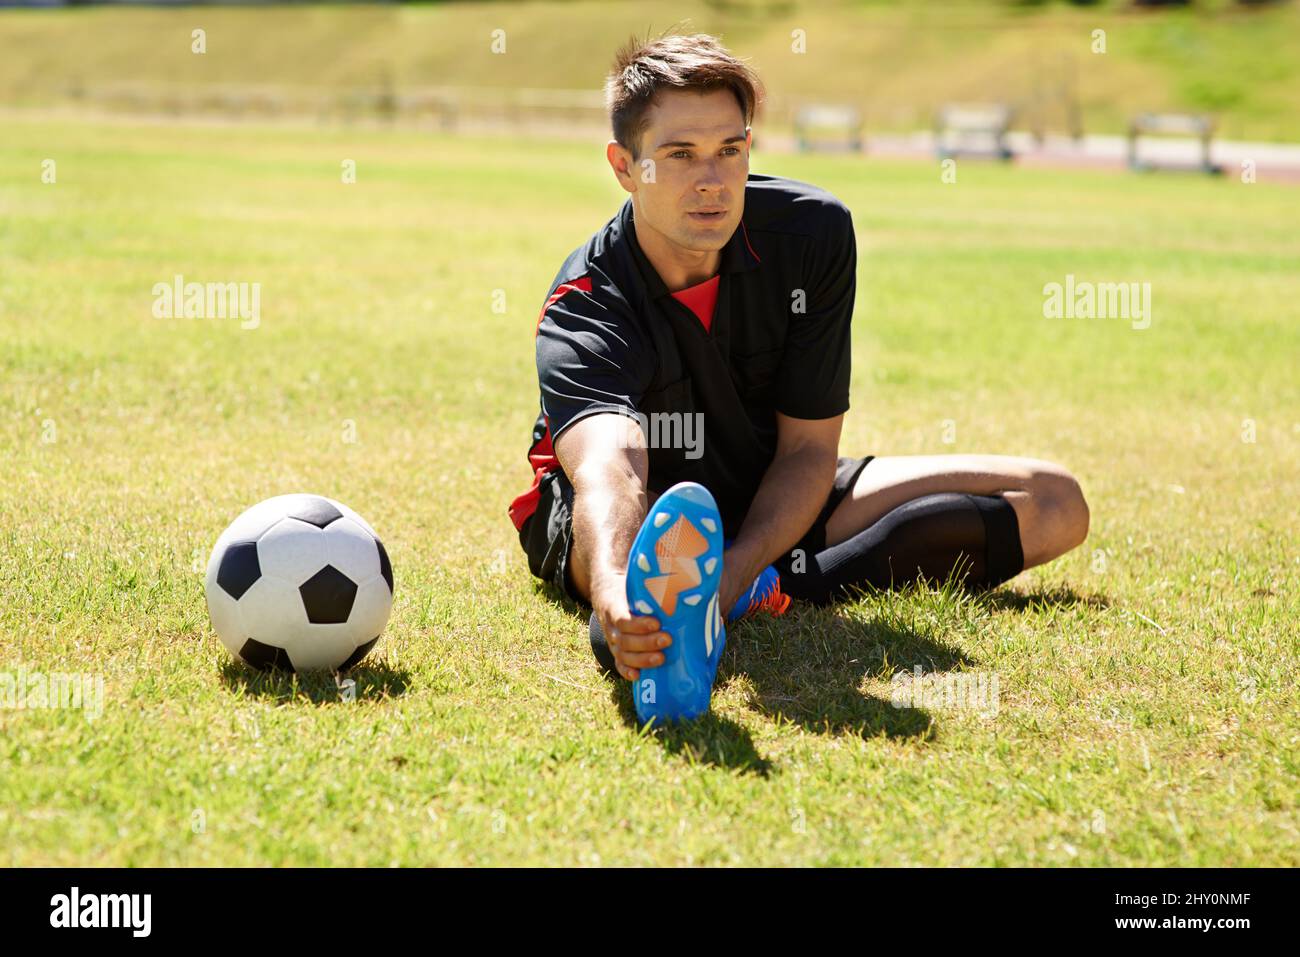 Dehnen vor dem Üben. Aufnahme eines jungen Fußballers, der sich auf dem Spielfeld streckt. Stockfoto